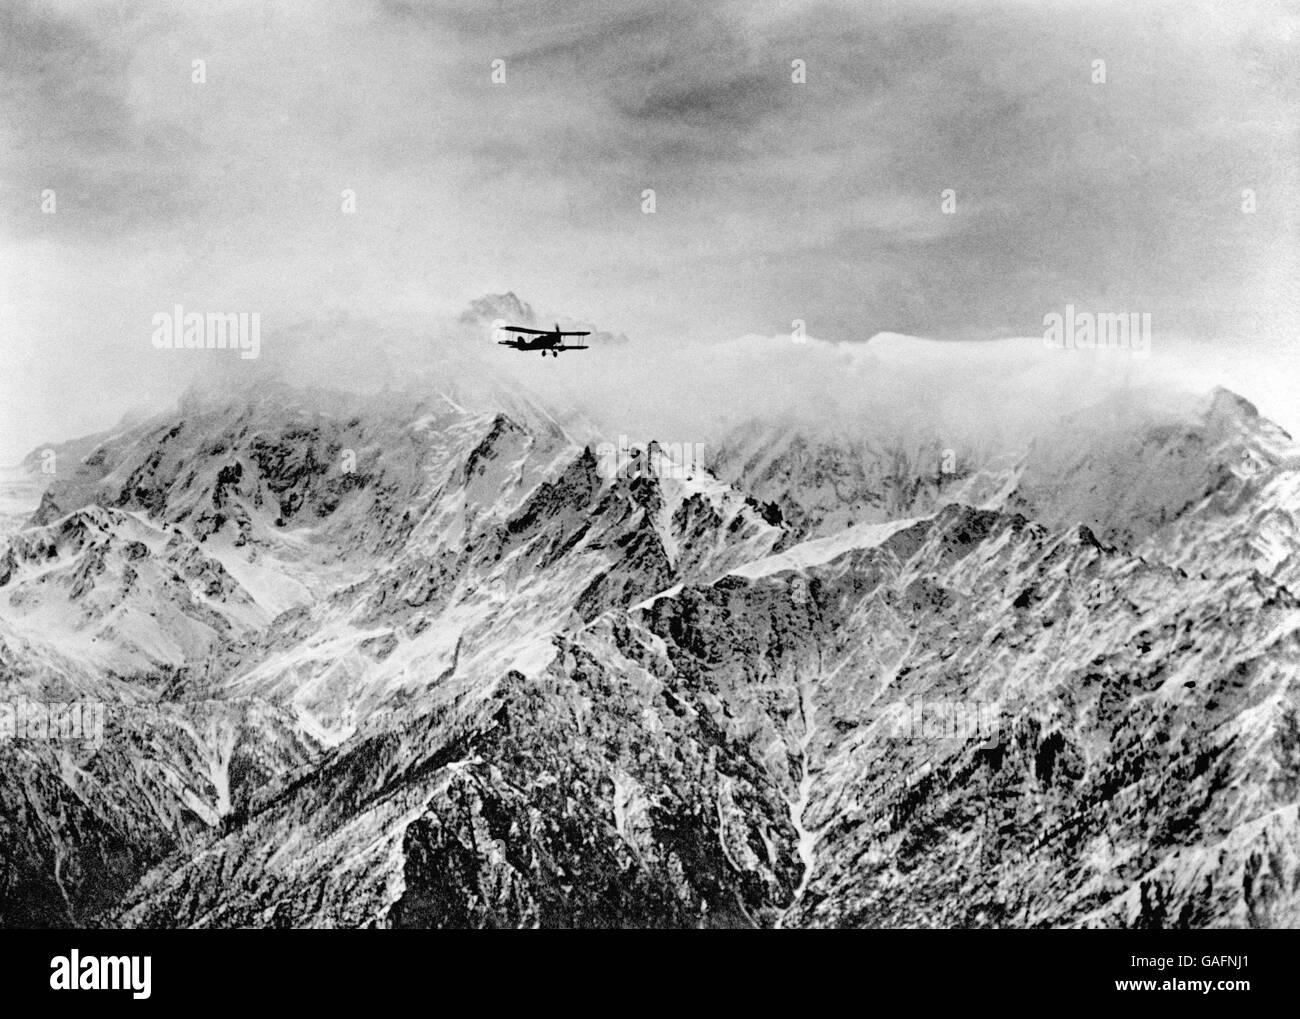 La RAF, qui contrôle la frontière nord-ouest de l'Inde, vole à une hauteur de 16,000 pieds à travers les hautes chaînes du Cachemire, montrant (en arrière-plan) le sommet de Nanga Parbat, la neuvième plus haute montagne de la Terre. Banque D'Images